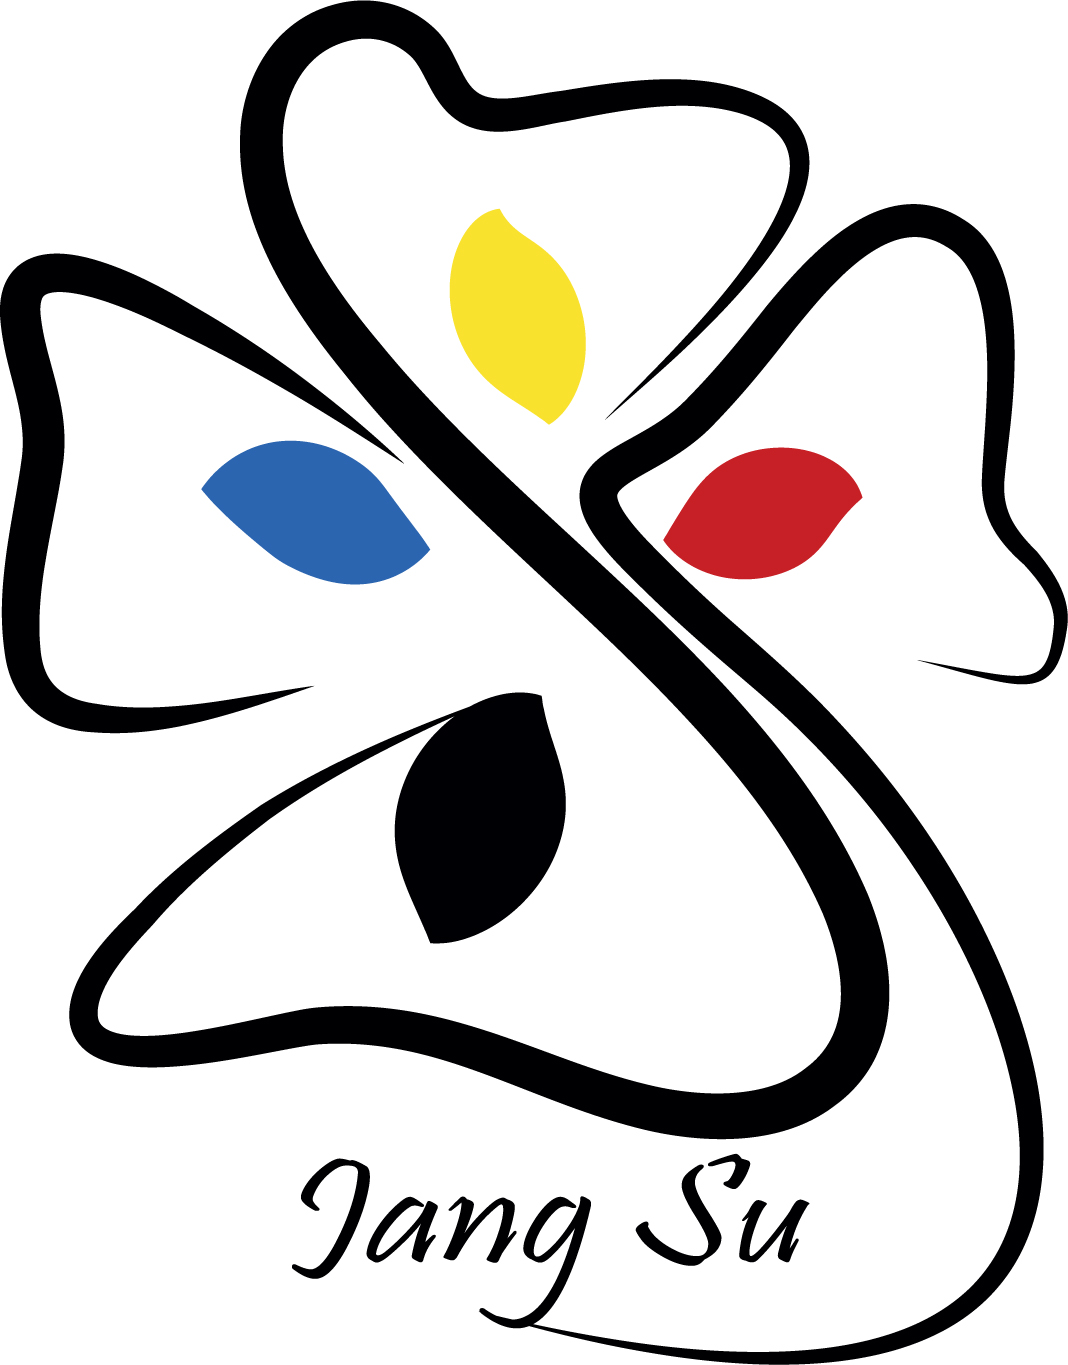 Jangsu logo